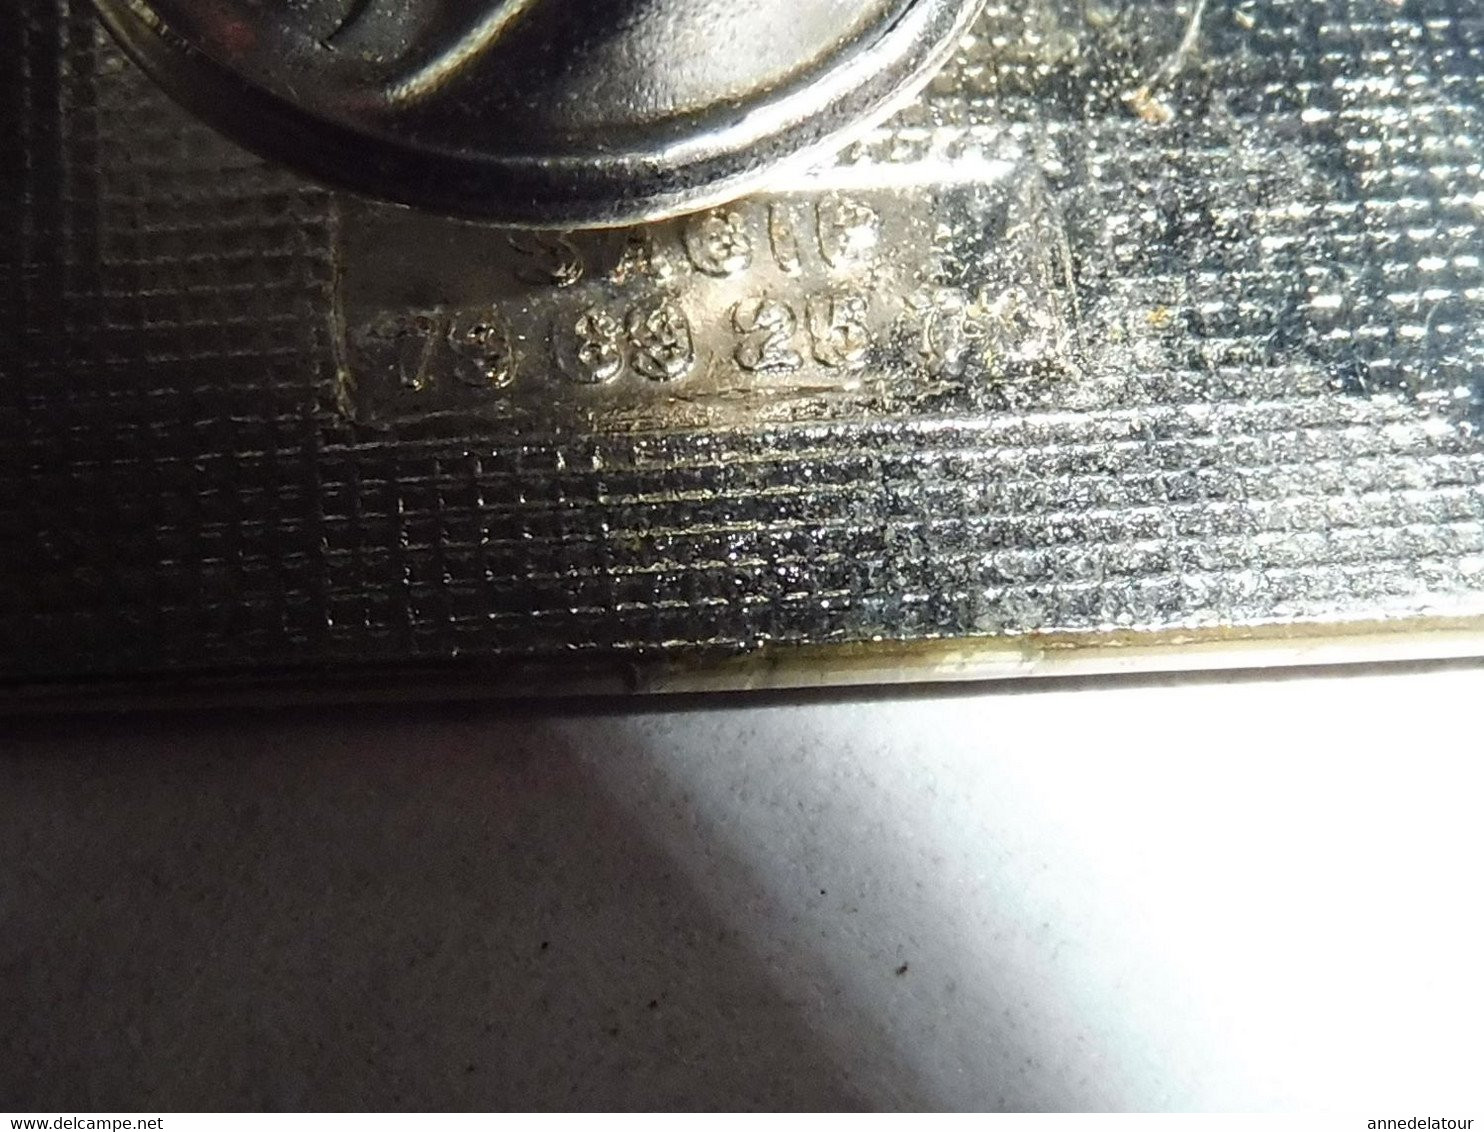 Pin's d'identification pour rallye concurent PELRAS COMPETITION  , identification gravée dans le métal , au dos  .